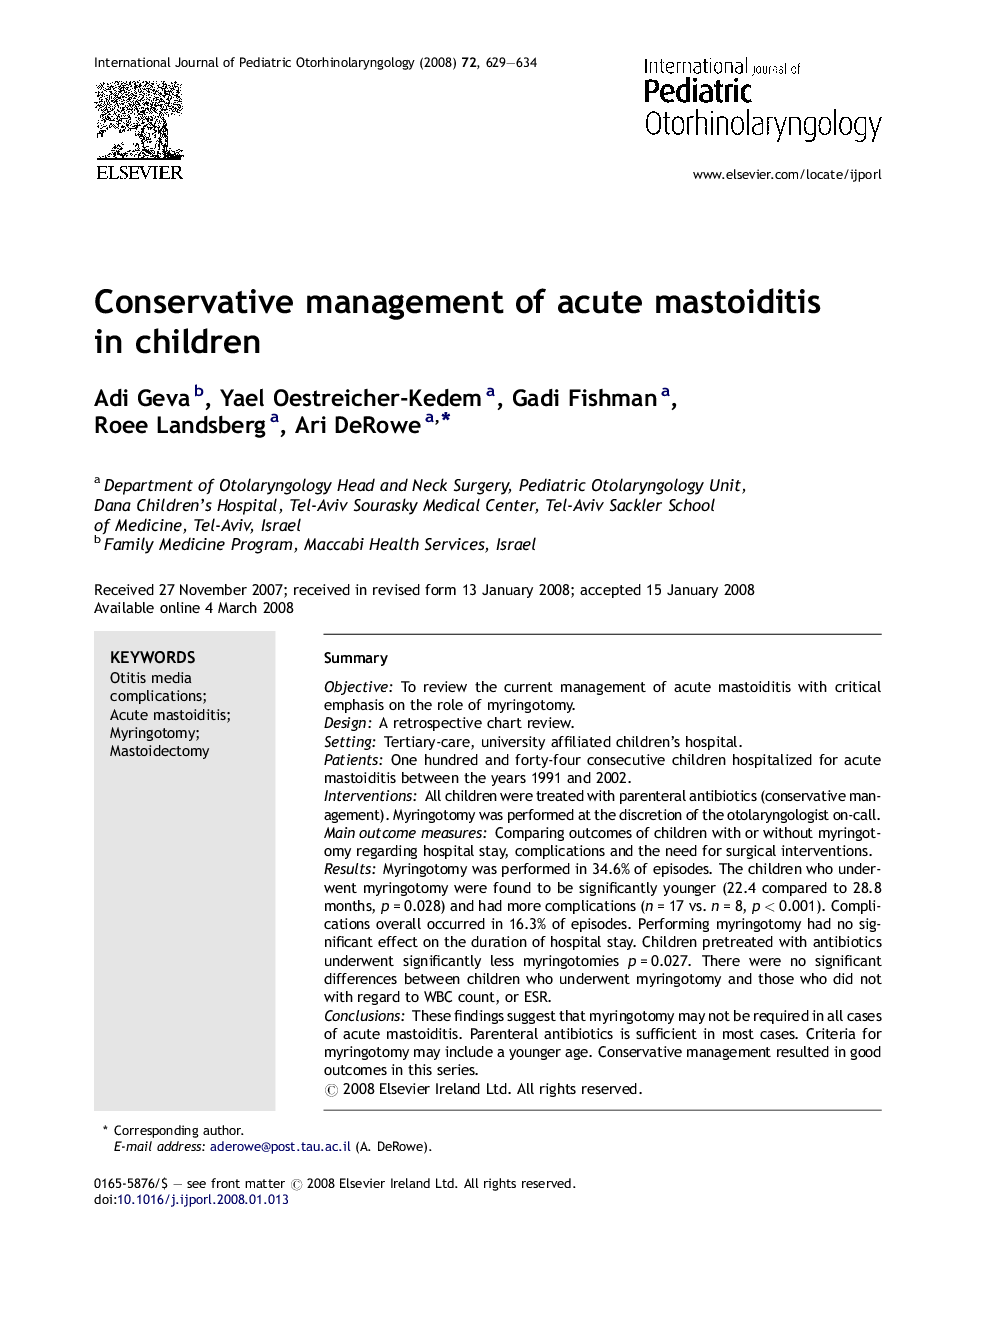 Conservative management of acute mastoiditis in children